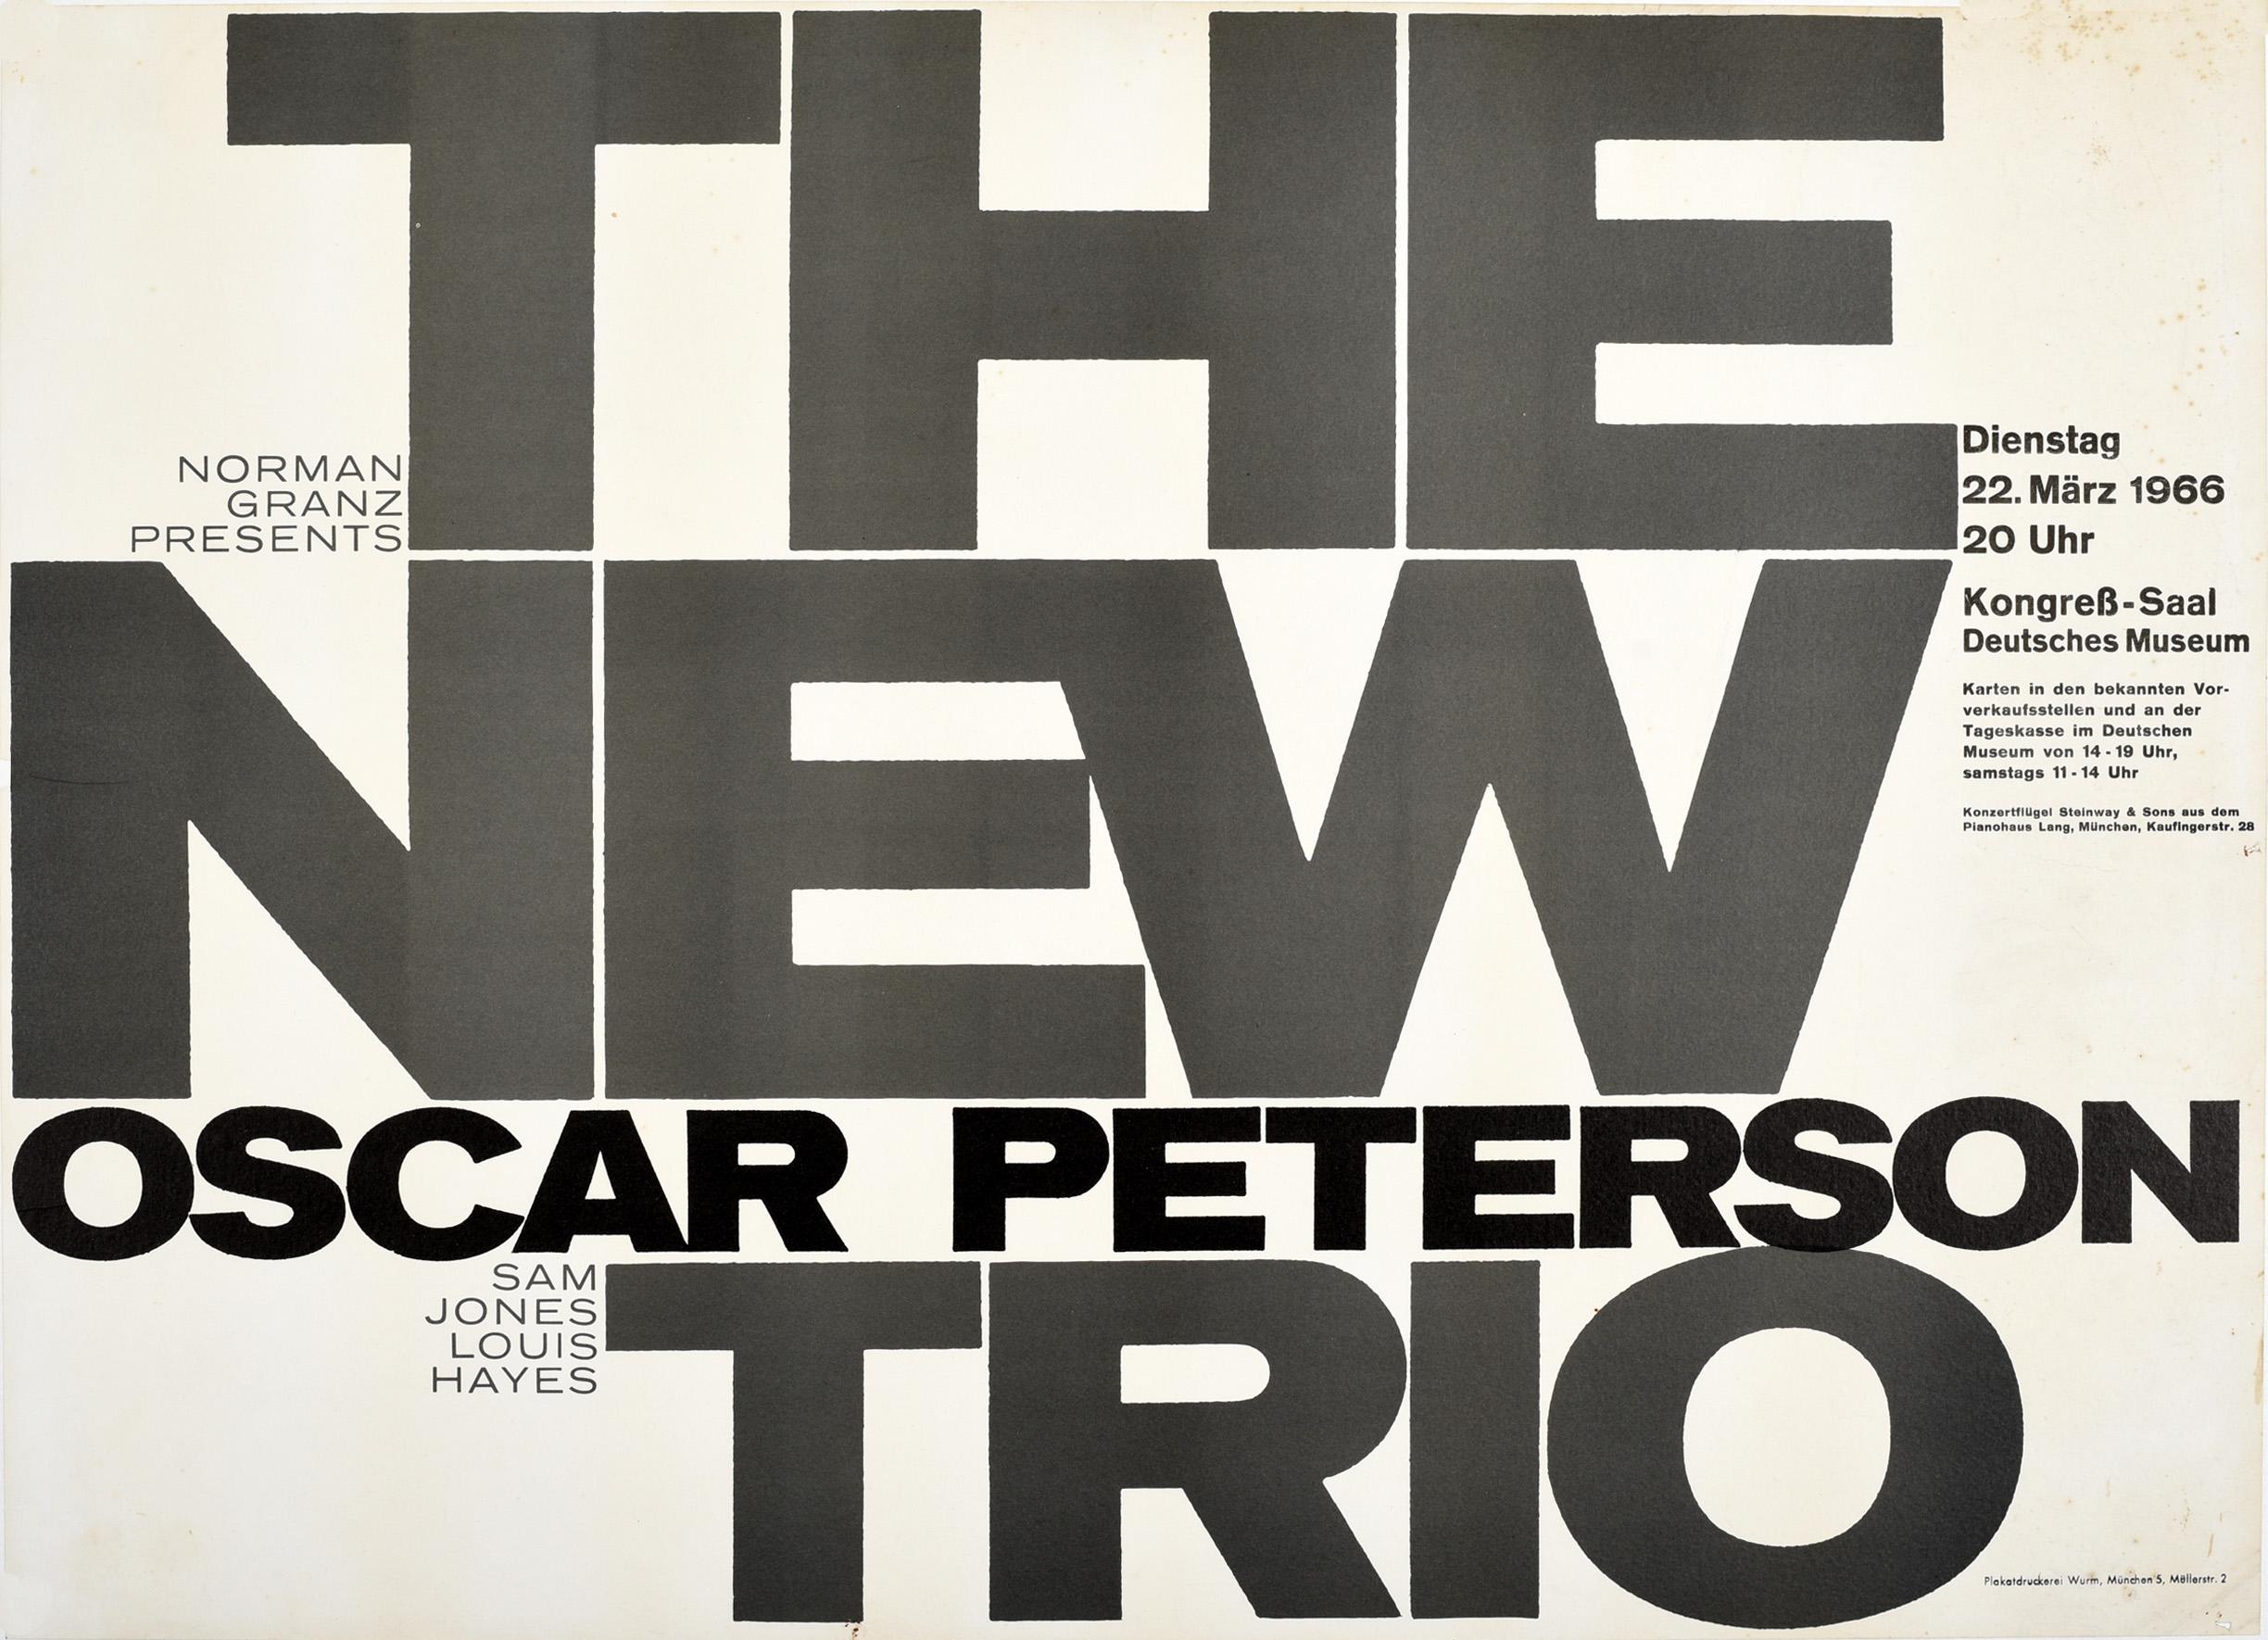 Original-Werbeplakat für Jazzmusik - Norman Granz presents The New Oscar Peterson Trio Sam Jones Louis Hayes - für ein Konzert am 22. März 1966. Typografisches Design mit dem fetten Titelschriftzug in der Mitte und dem restlichen Text an der Seite.